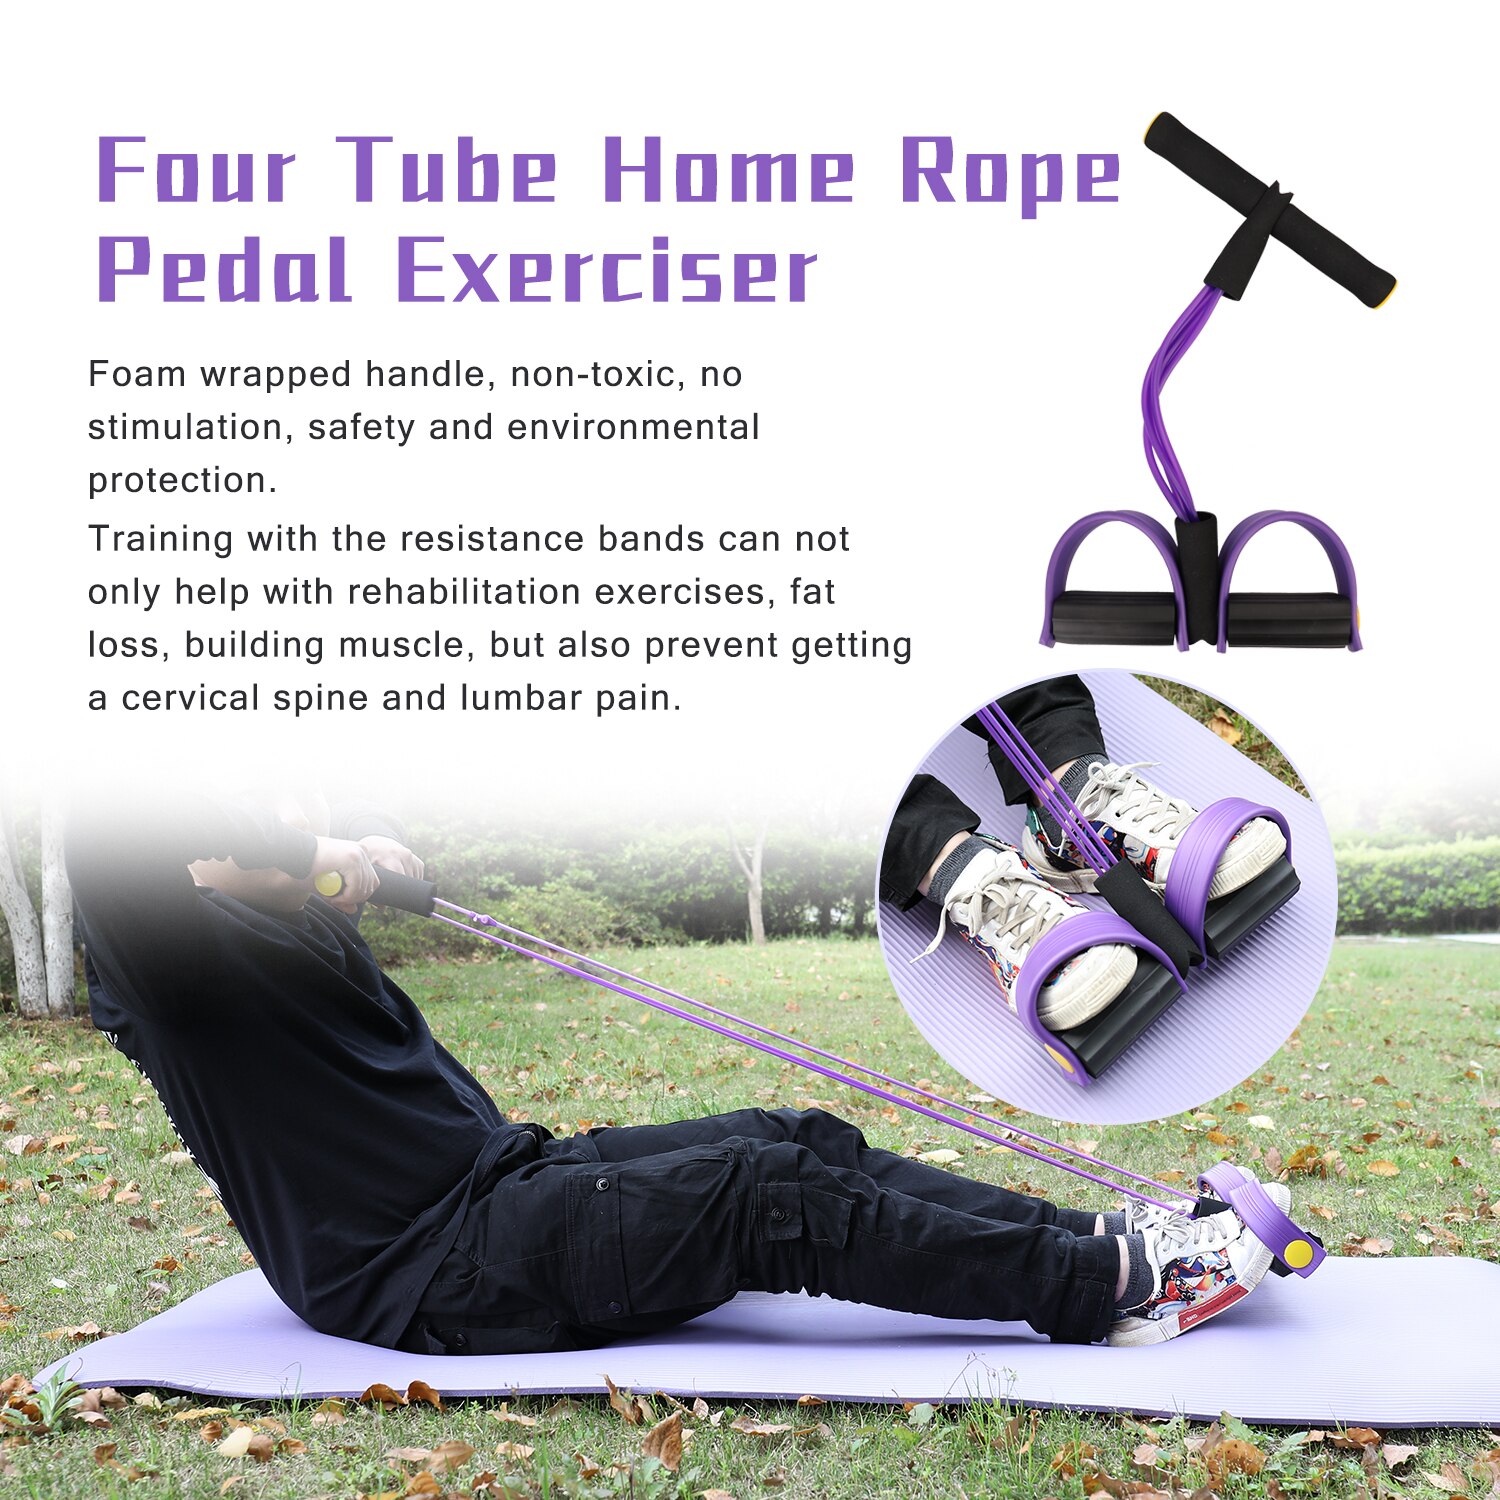 Fire rør hjem reb pedal træner traktor elastisk læg reb sit-ups mave fitness modstandsbånd gym udstyr til hjemmet